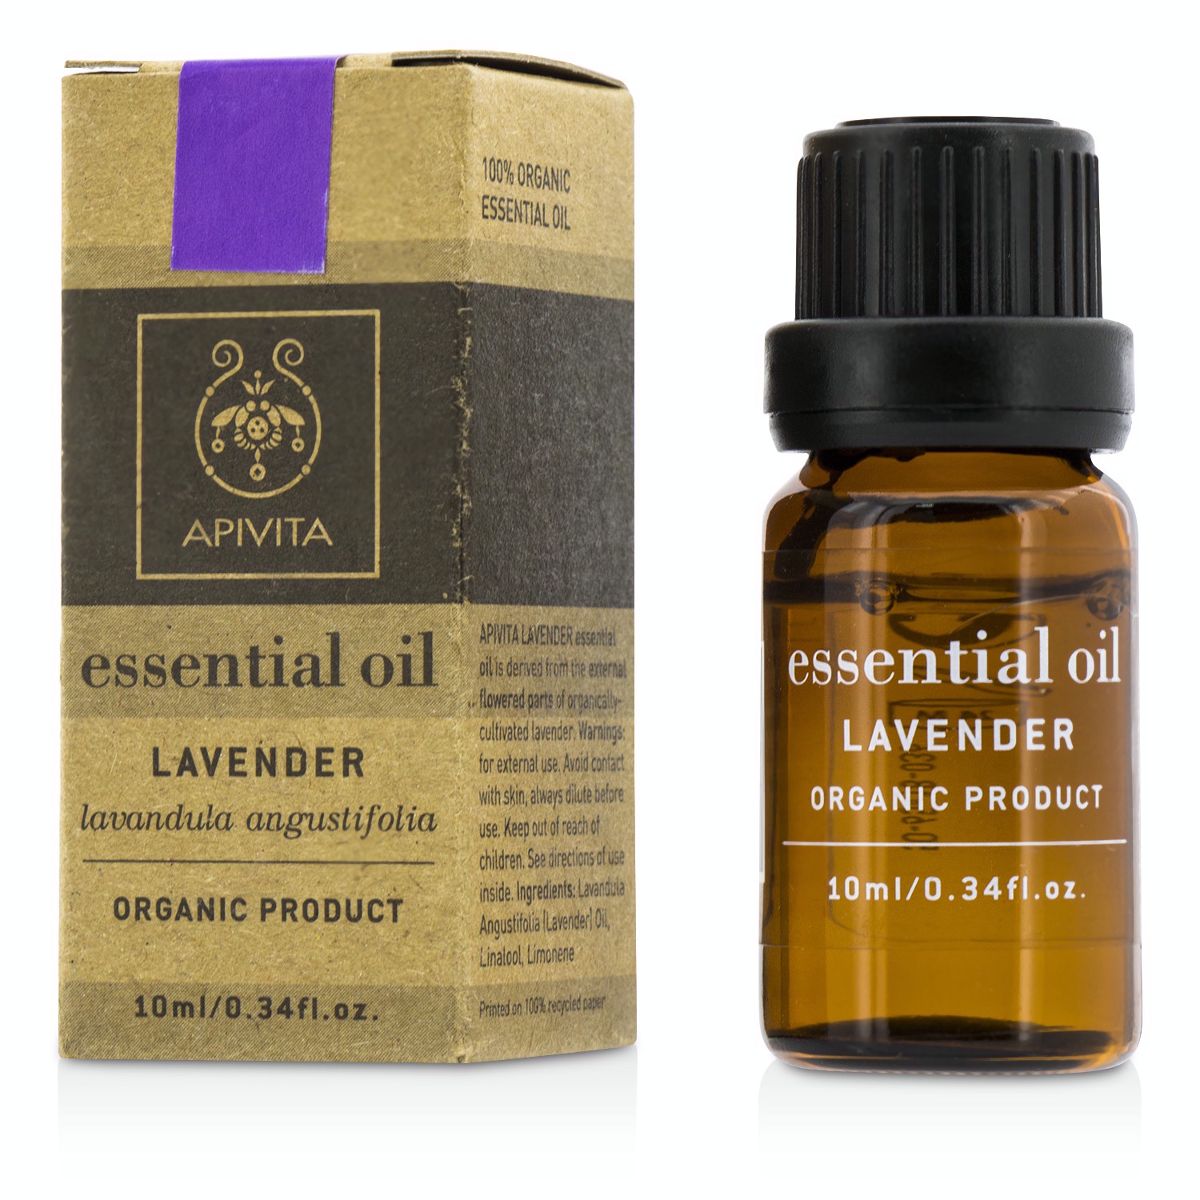 Essential Oil - Lavender Apivita Image